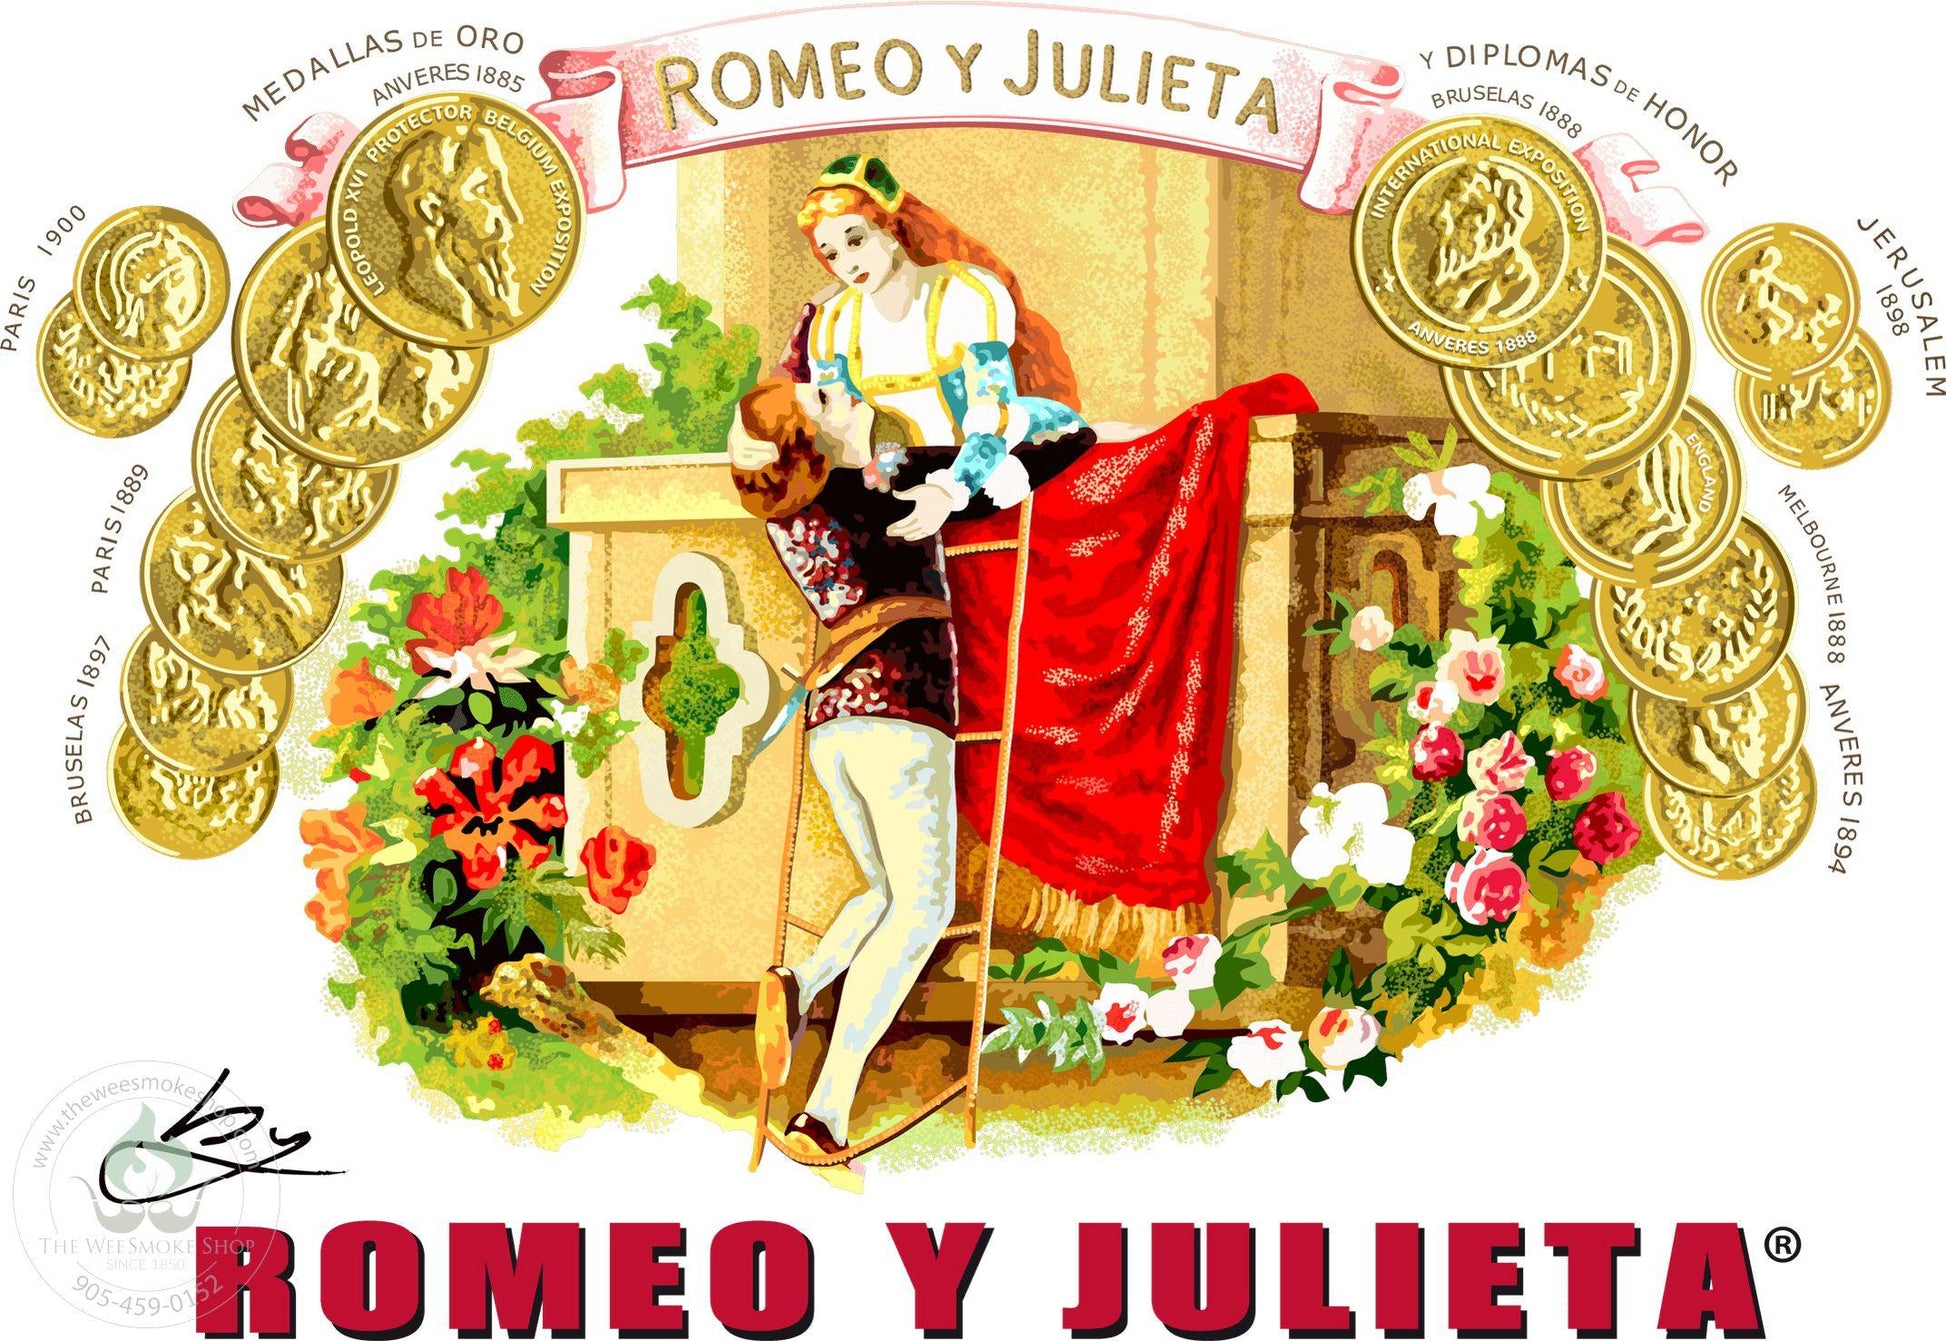 Romeo y Julieta-Cuban Cigars-The Wee Smoke Shop